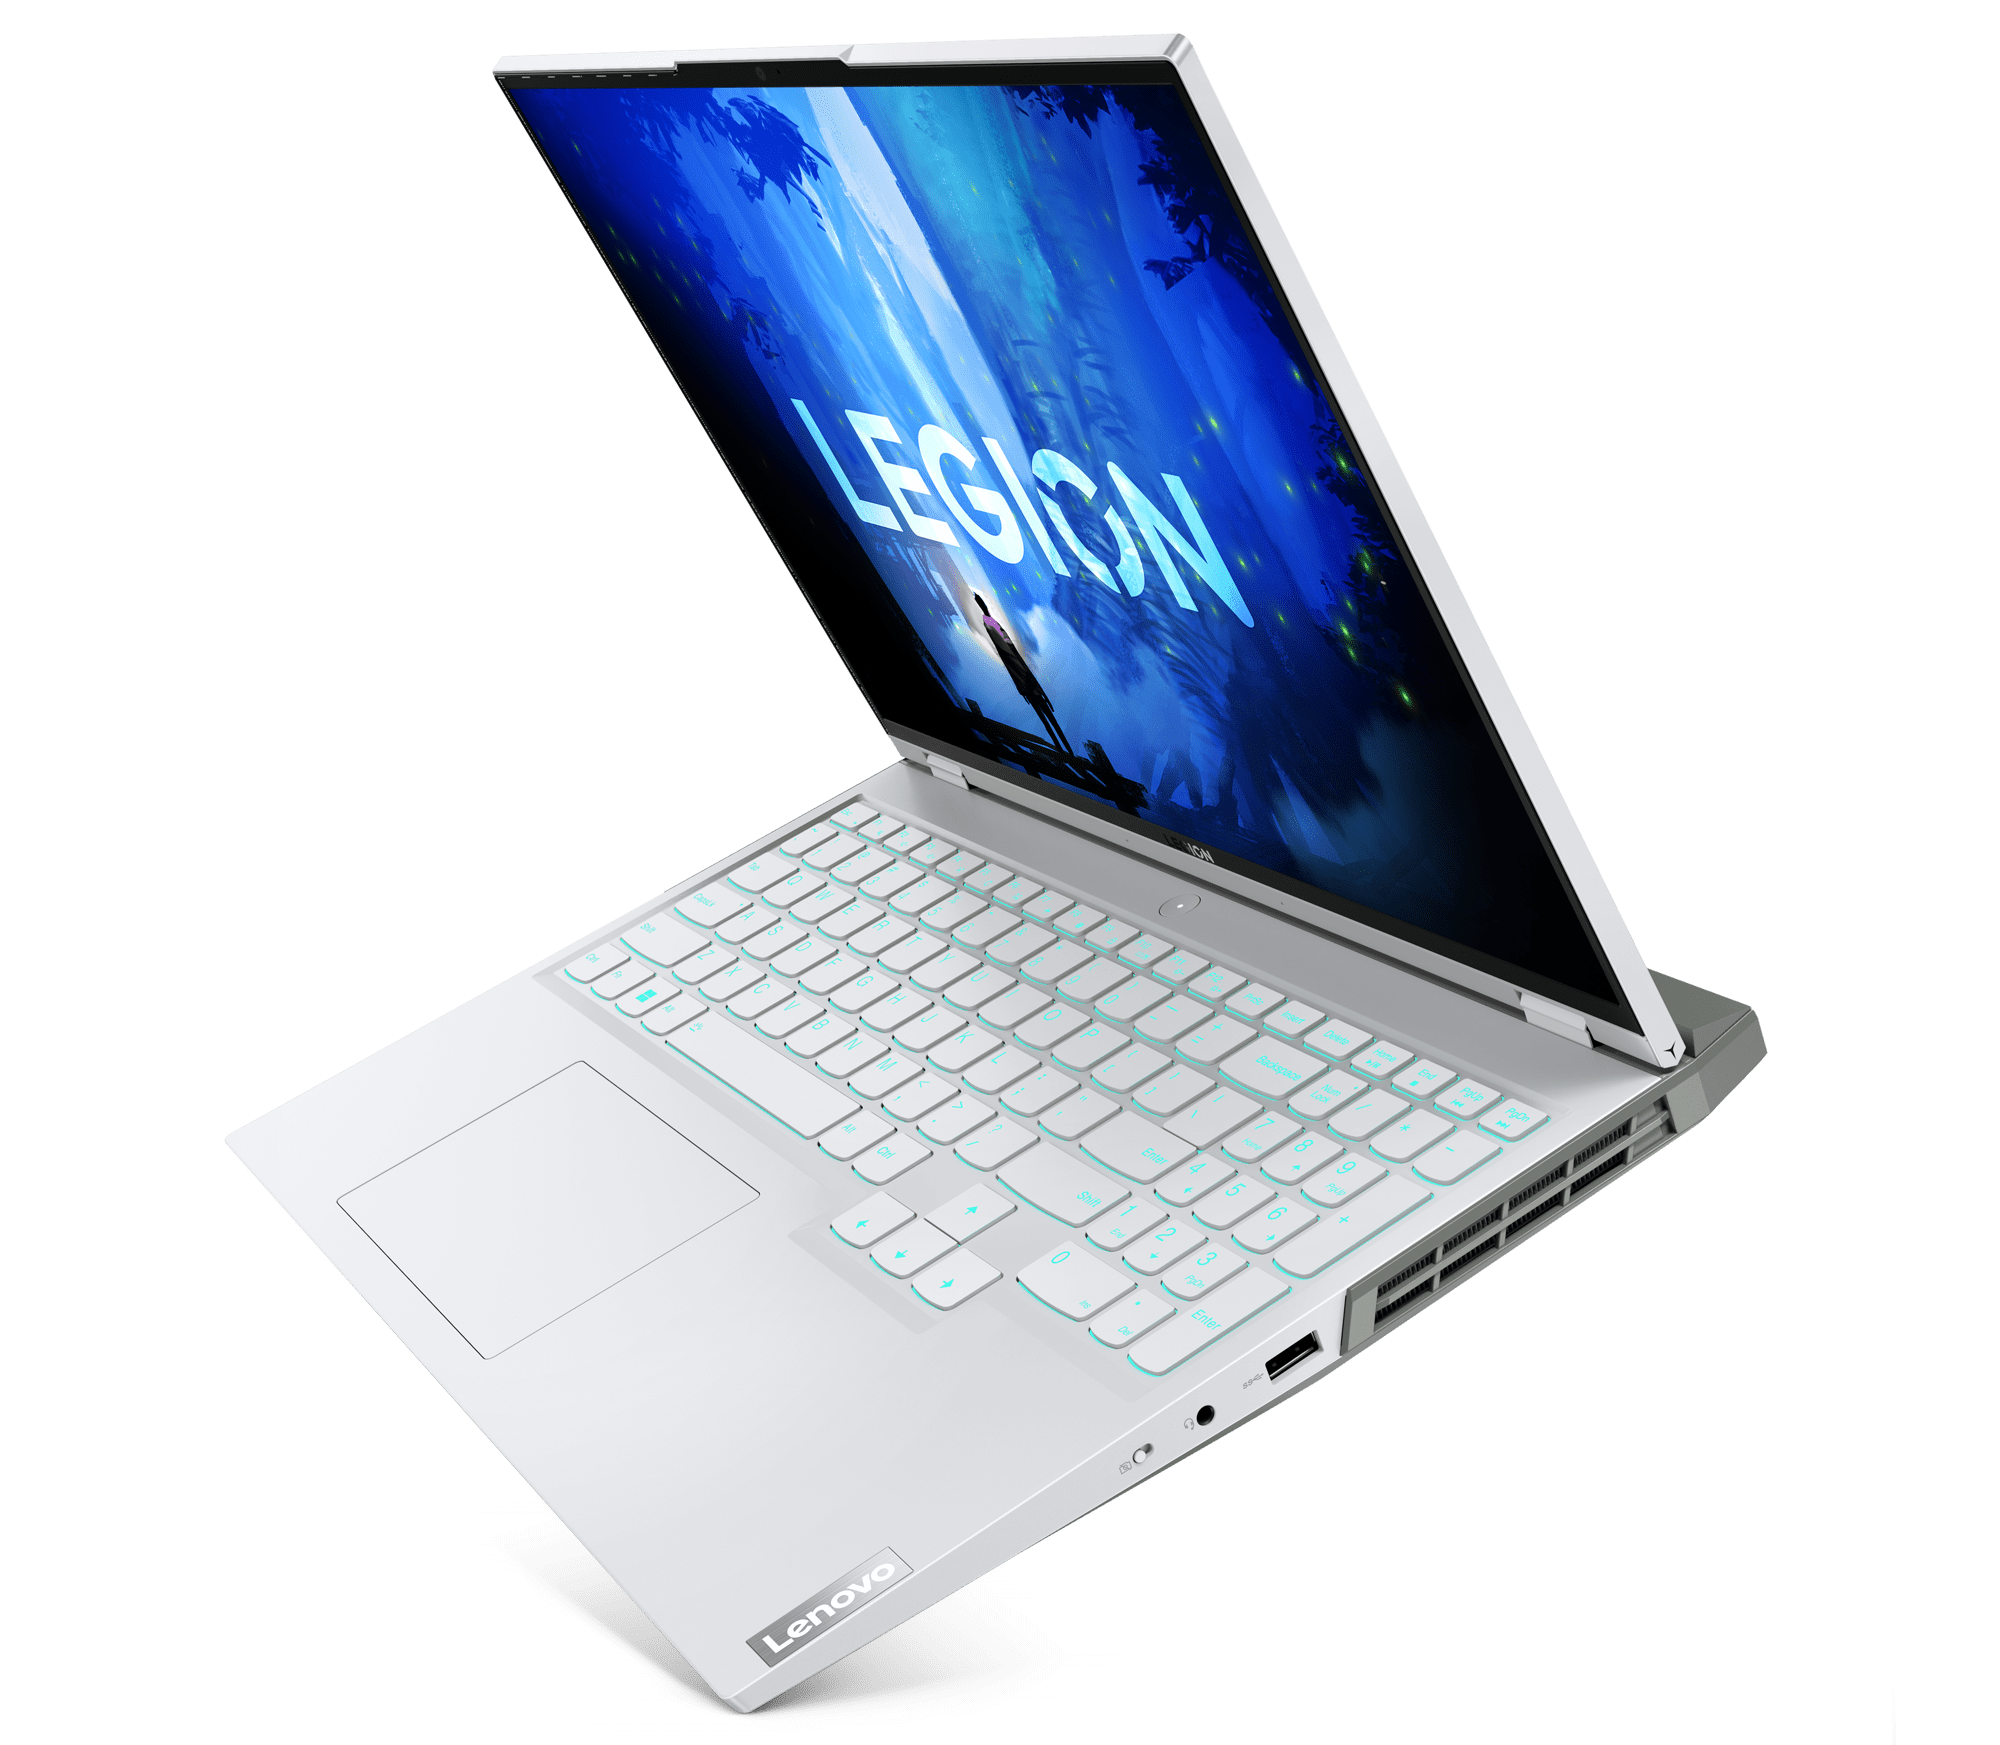 The Lenovo Legion 5i/5 Pro laptop is shown in Glacier White hue